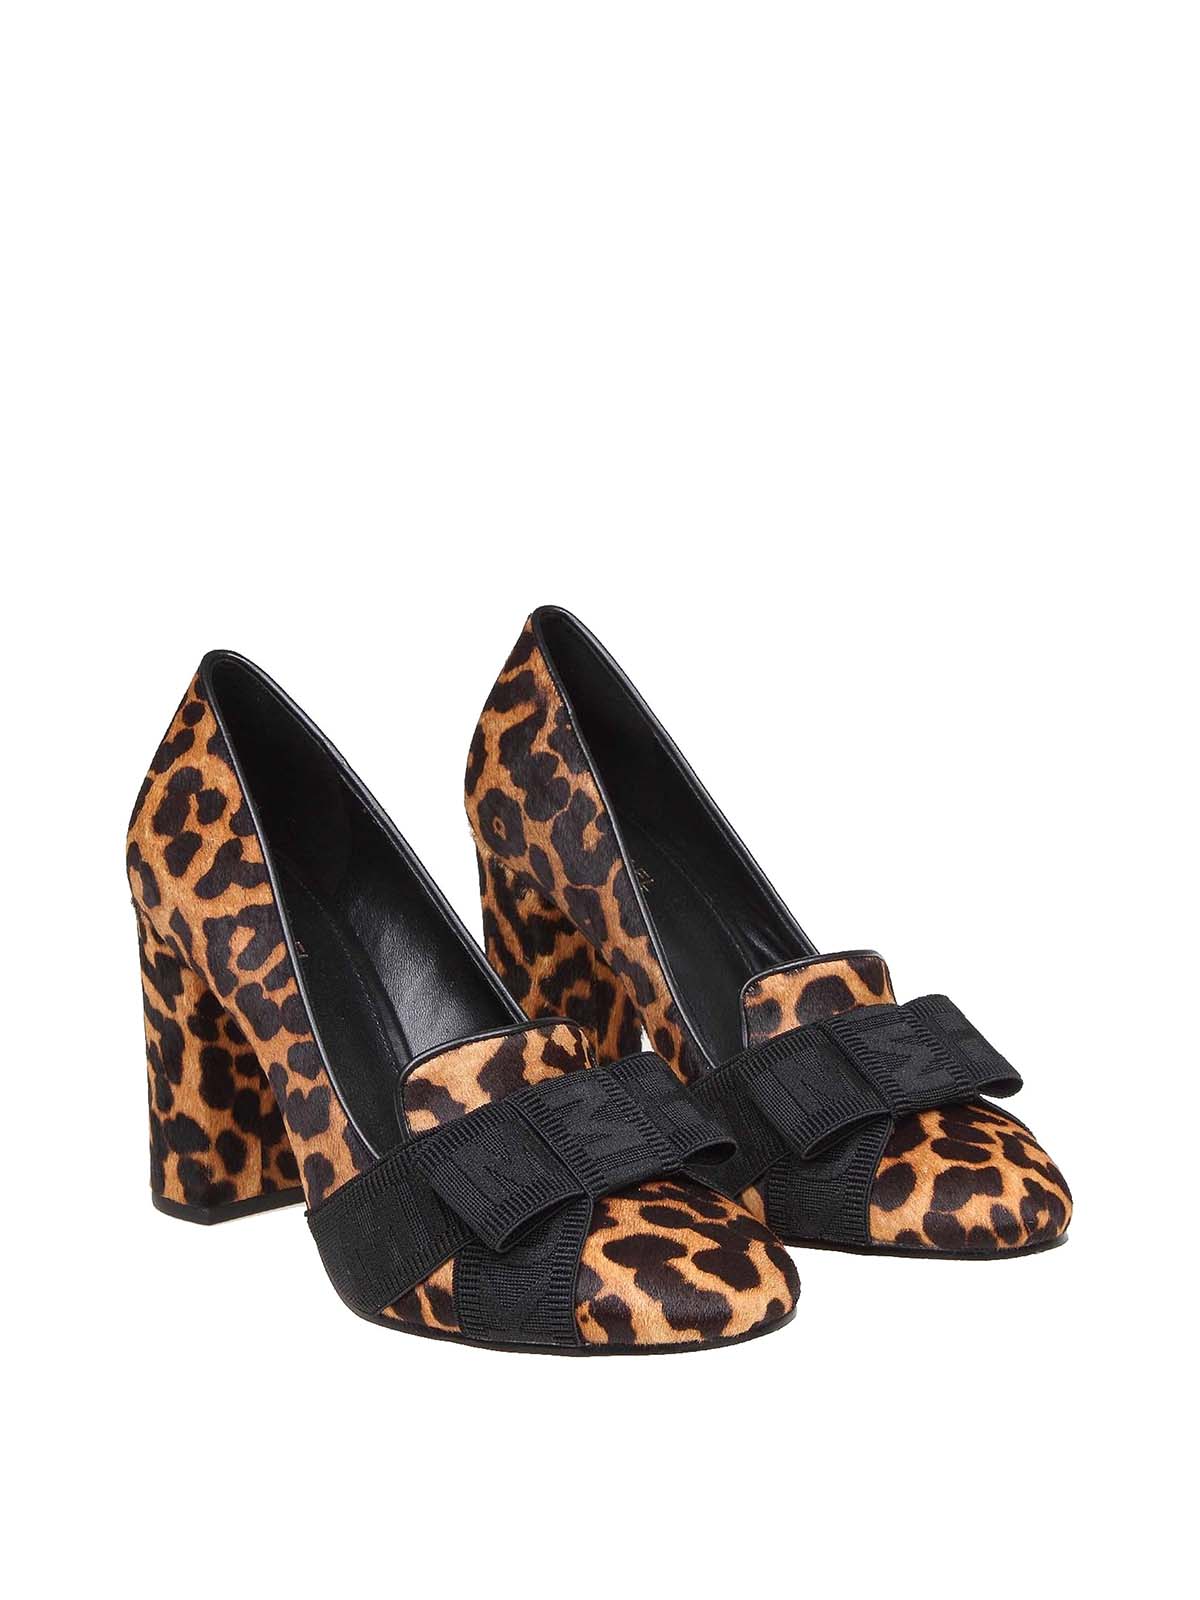 SALE  Ladies Spot On leopard print textile slip on court shoe F9526 